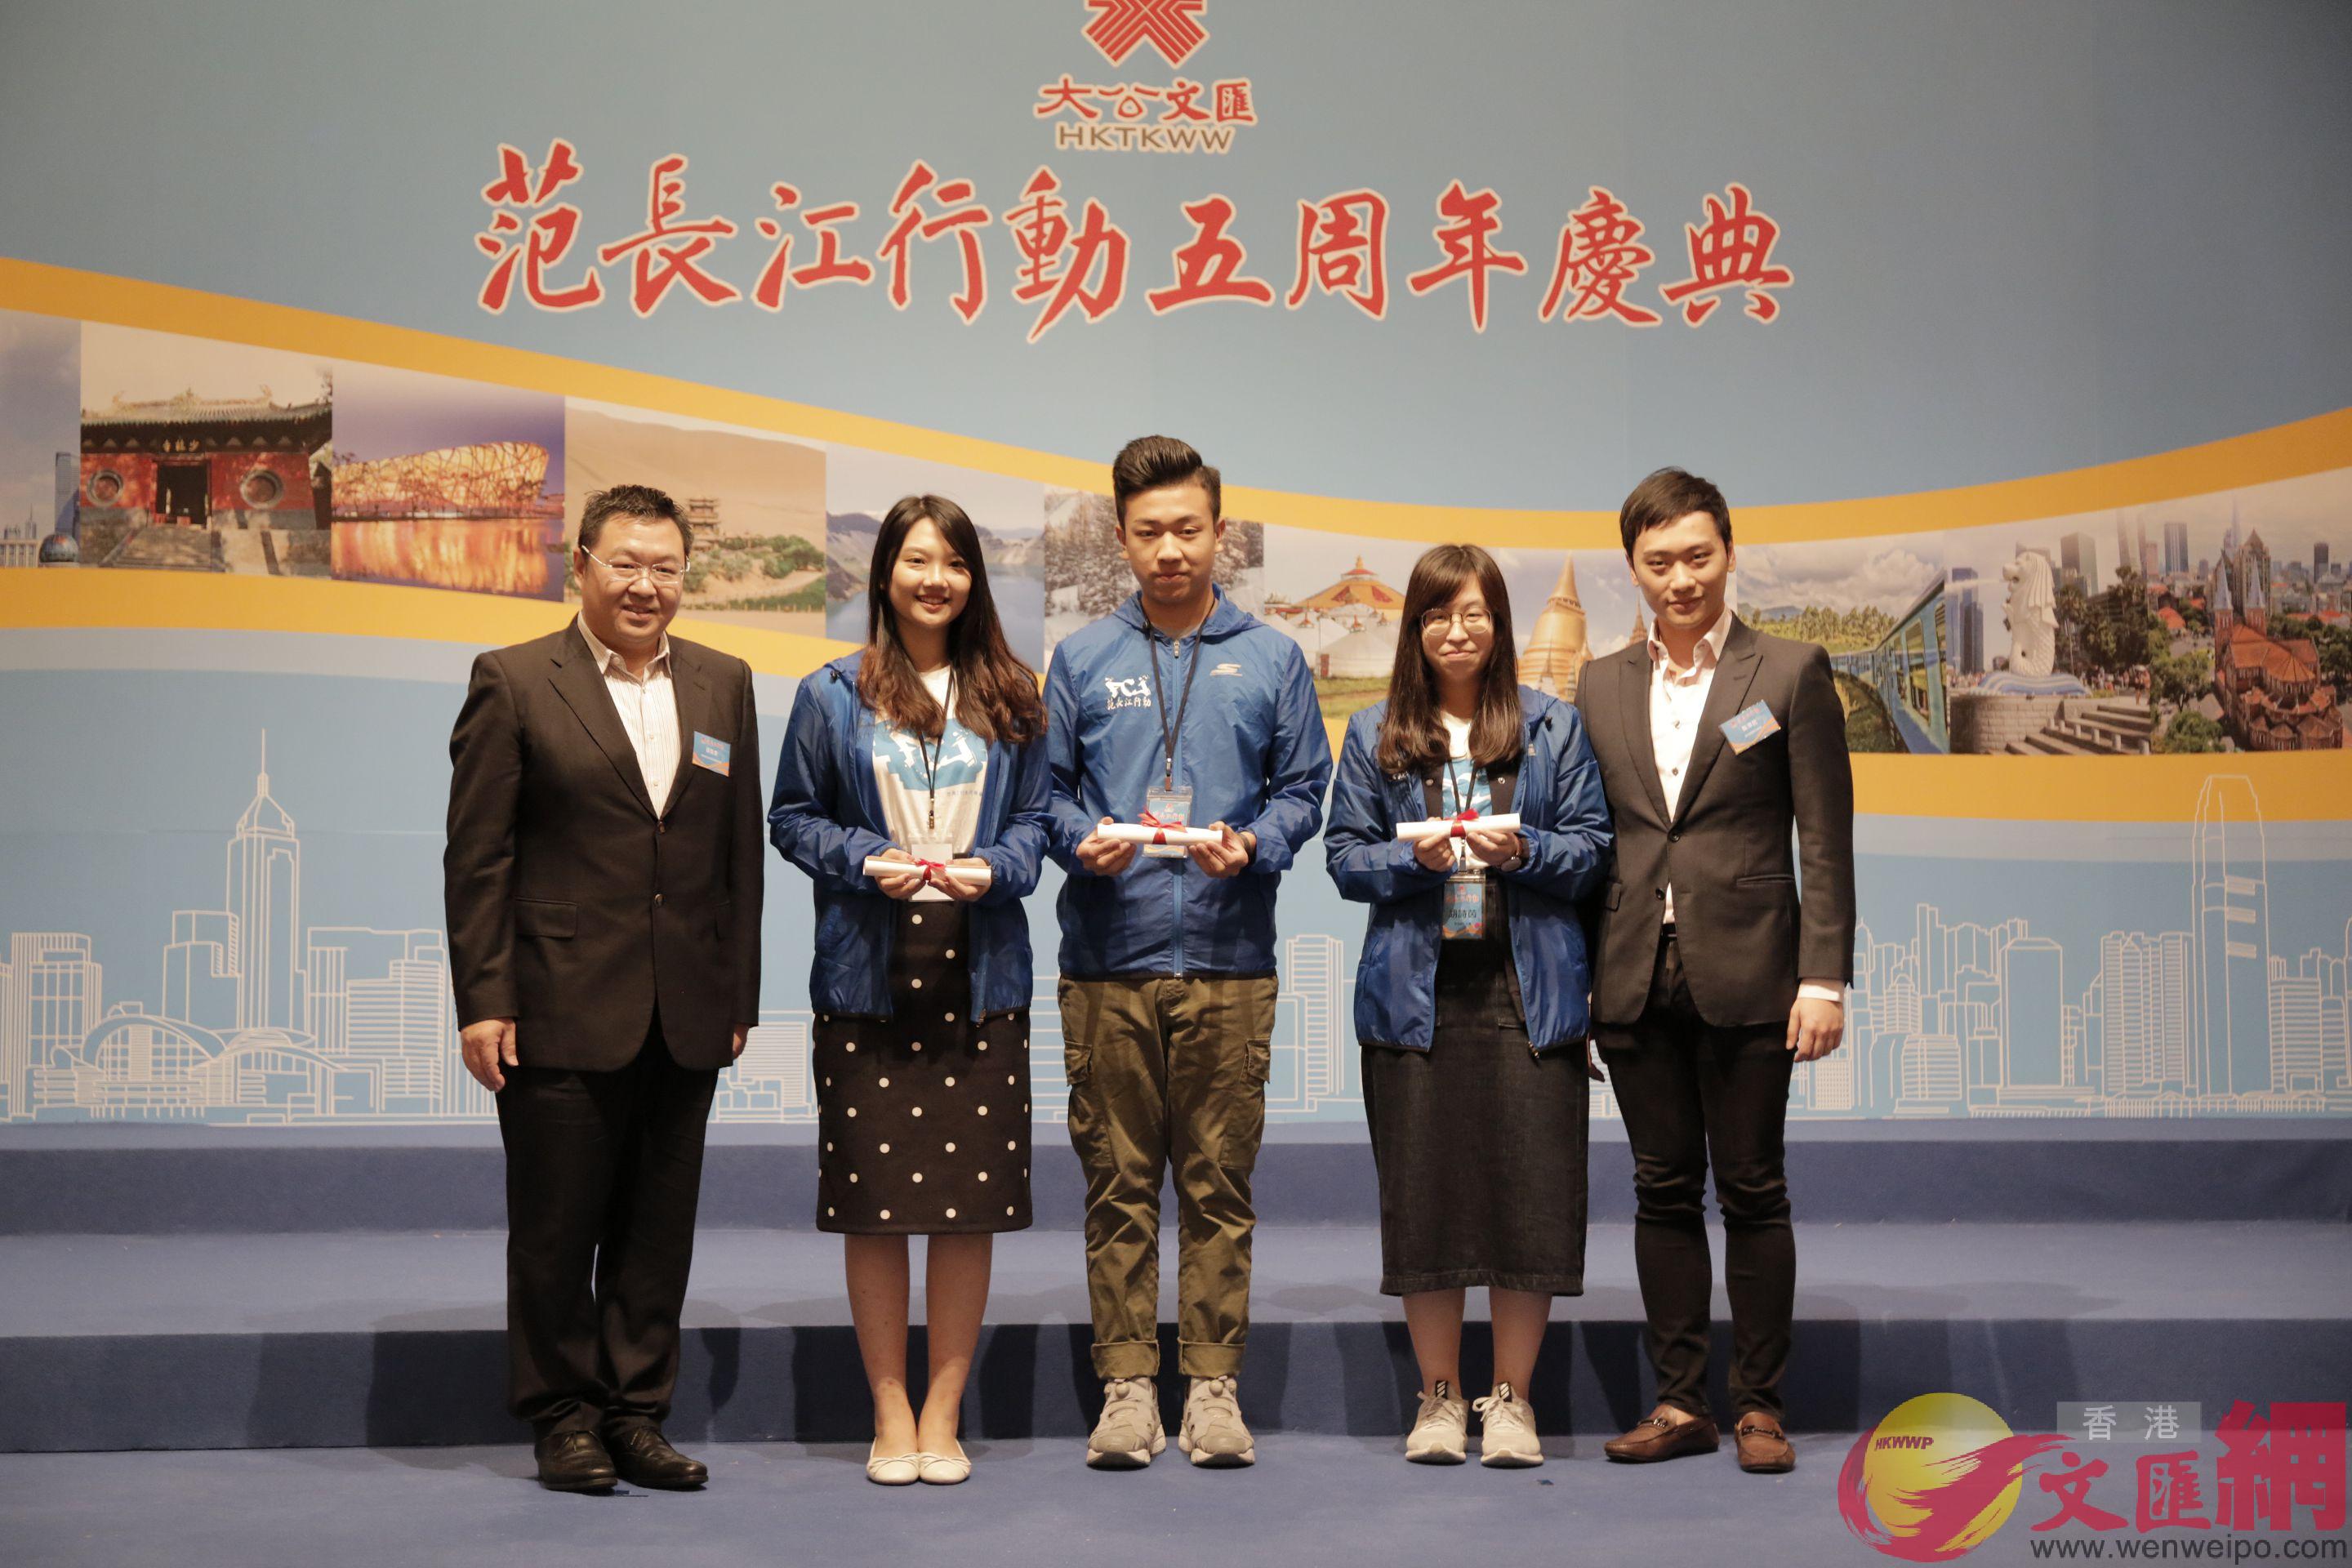 榮獲五周年最佳新聞圖片獎的學生與頒獎嘉賓合影]記者 鄧智仁 攝^